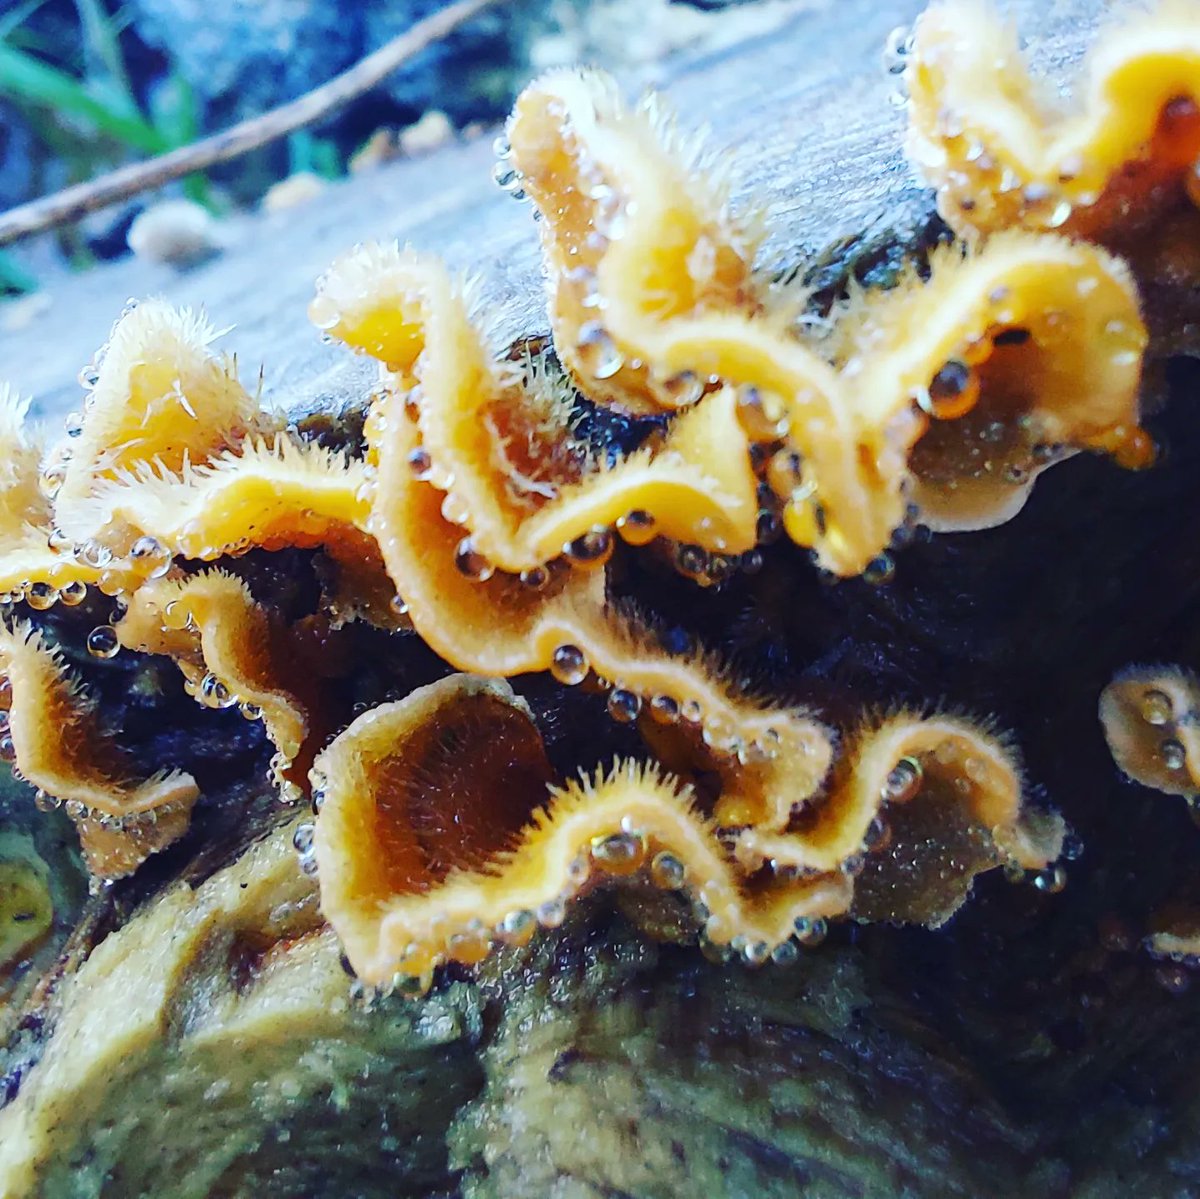 Lots of Turkey tail around with the wet mild weather here in #Devon #turkeytail #fungi #mushroom